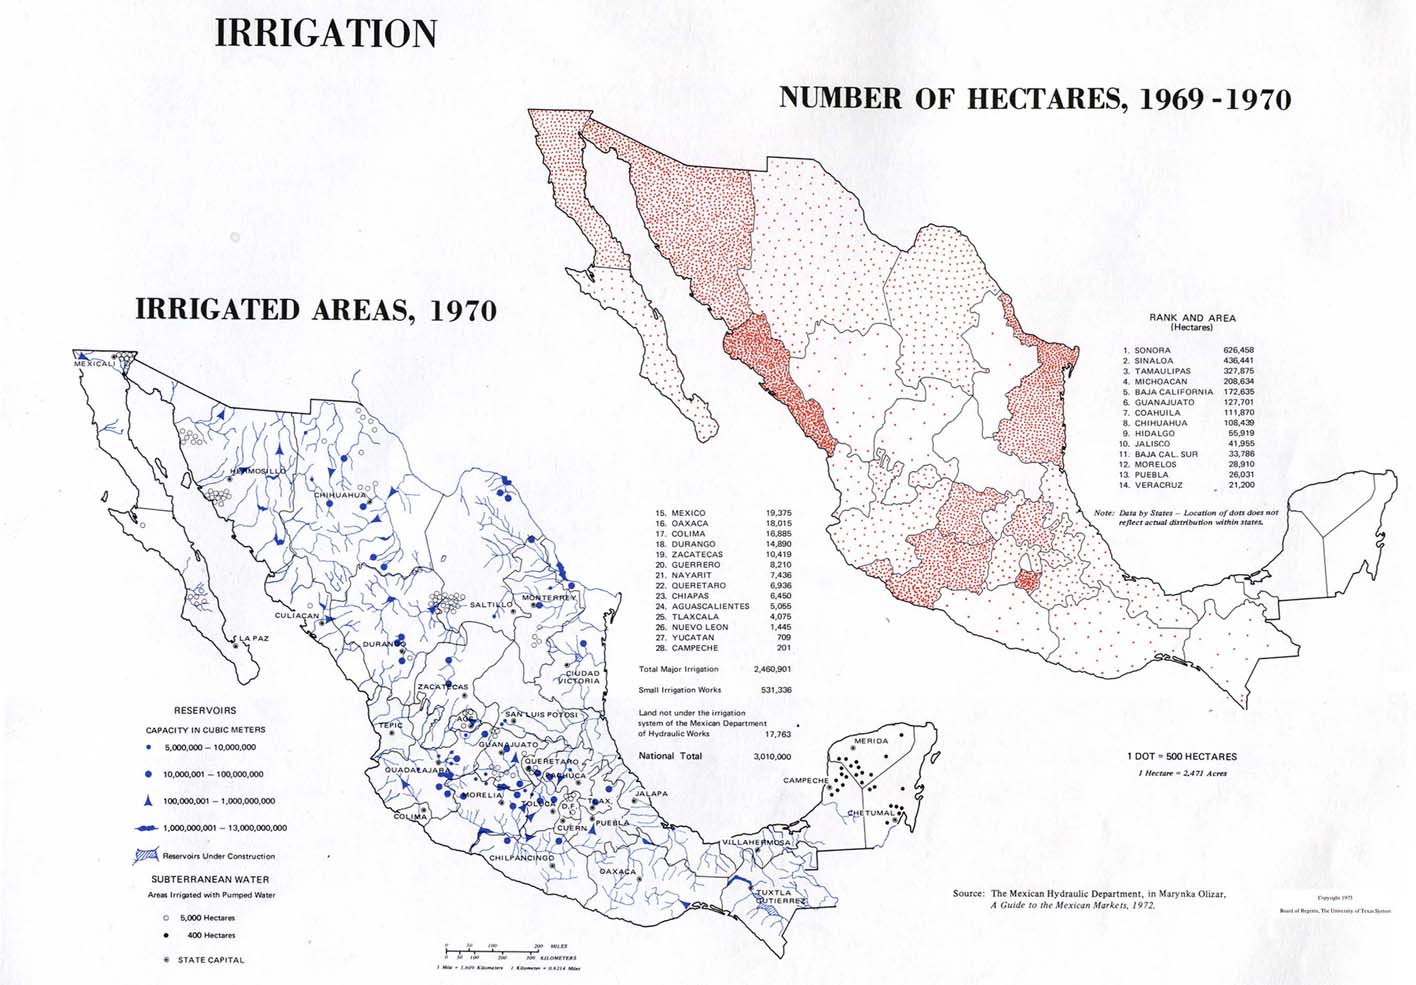 Mapa de Riego en México 1969 - 1970